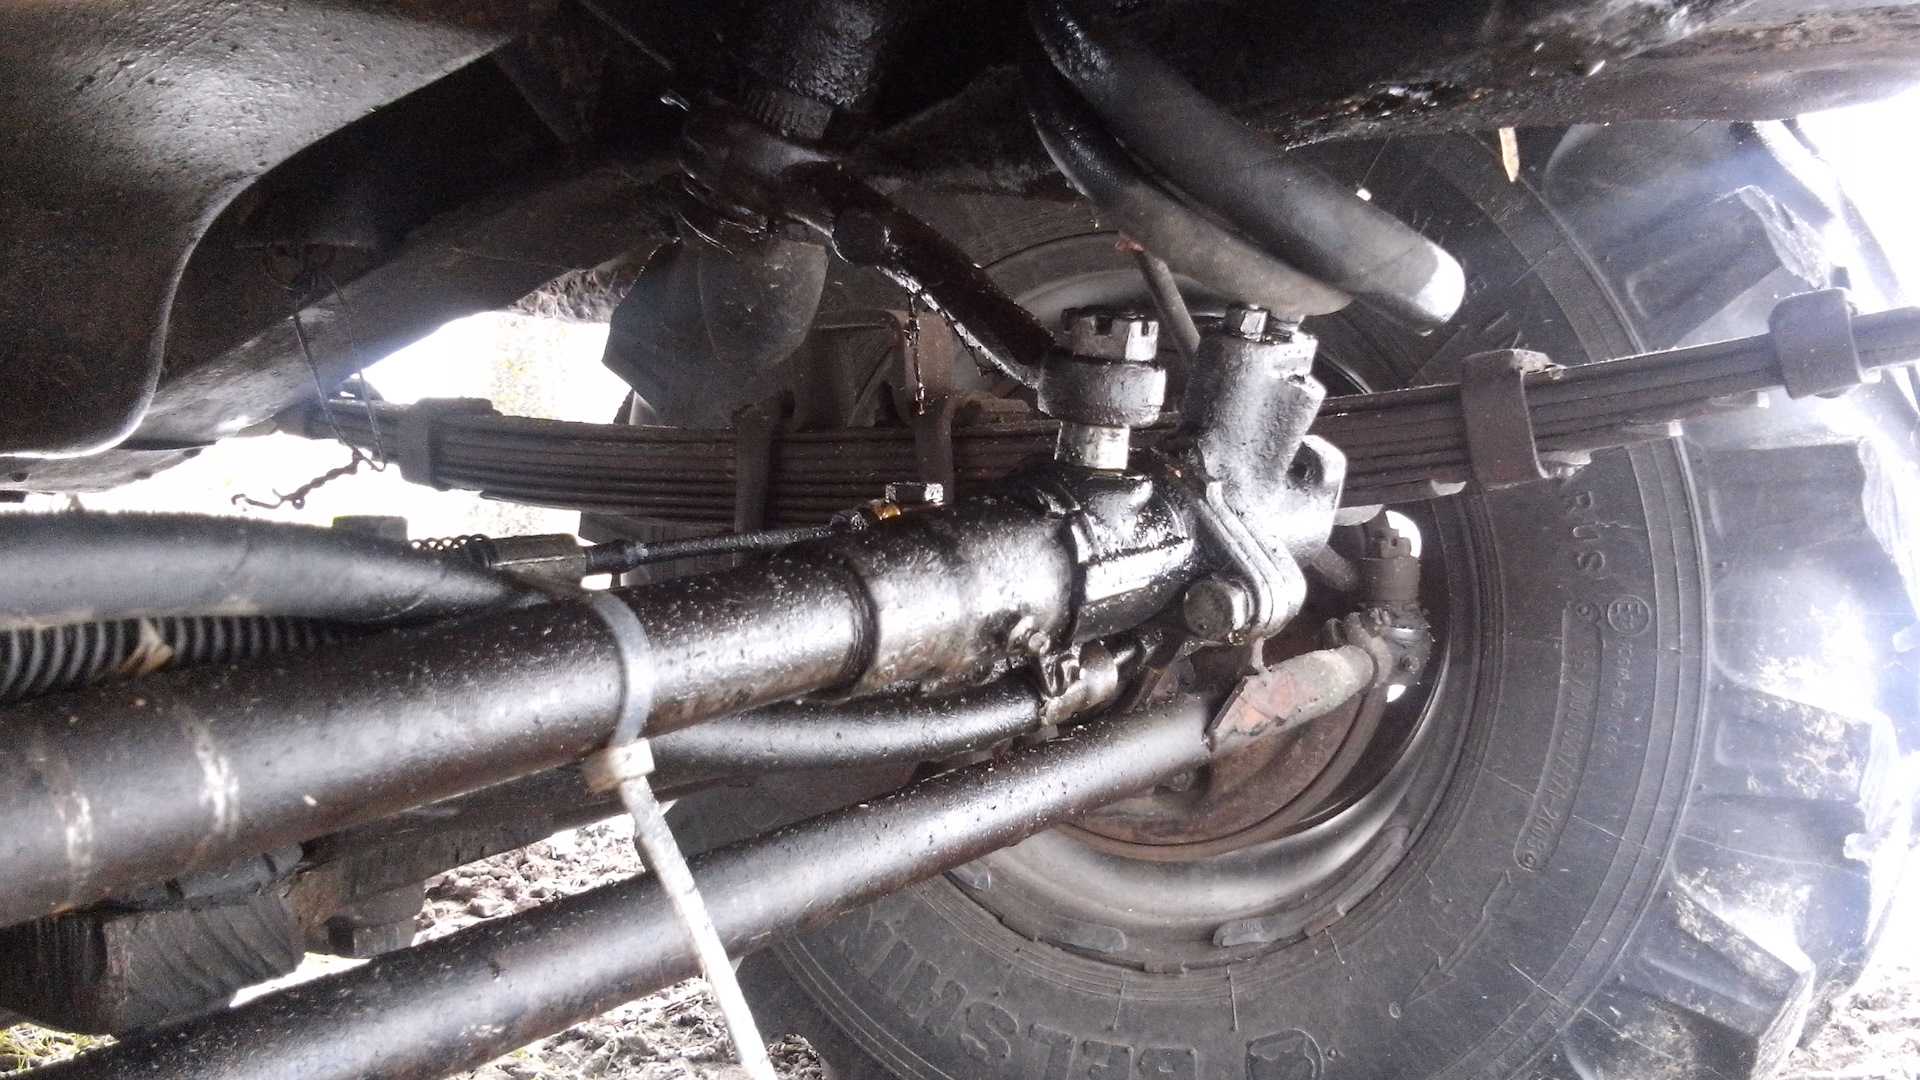 Регулировка золотника газ 66 продольной тяги - ремонт авто своими руками - тонкости и подводные камни